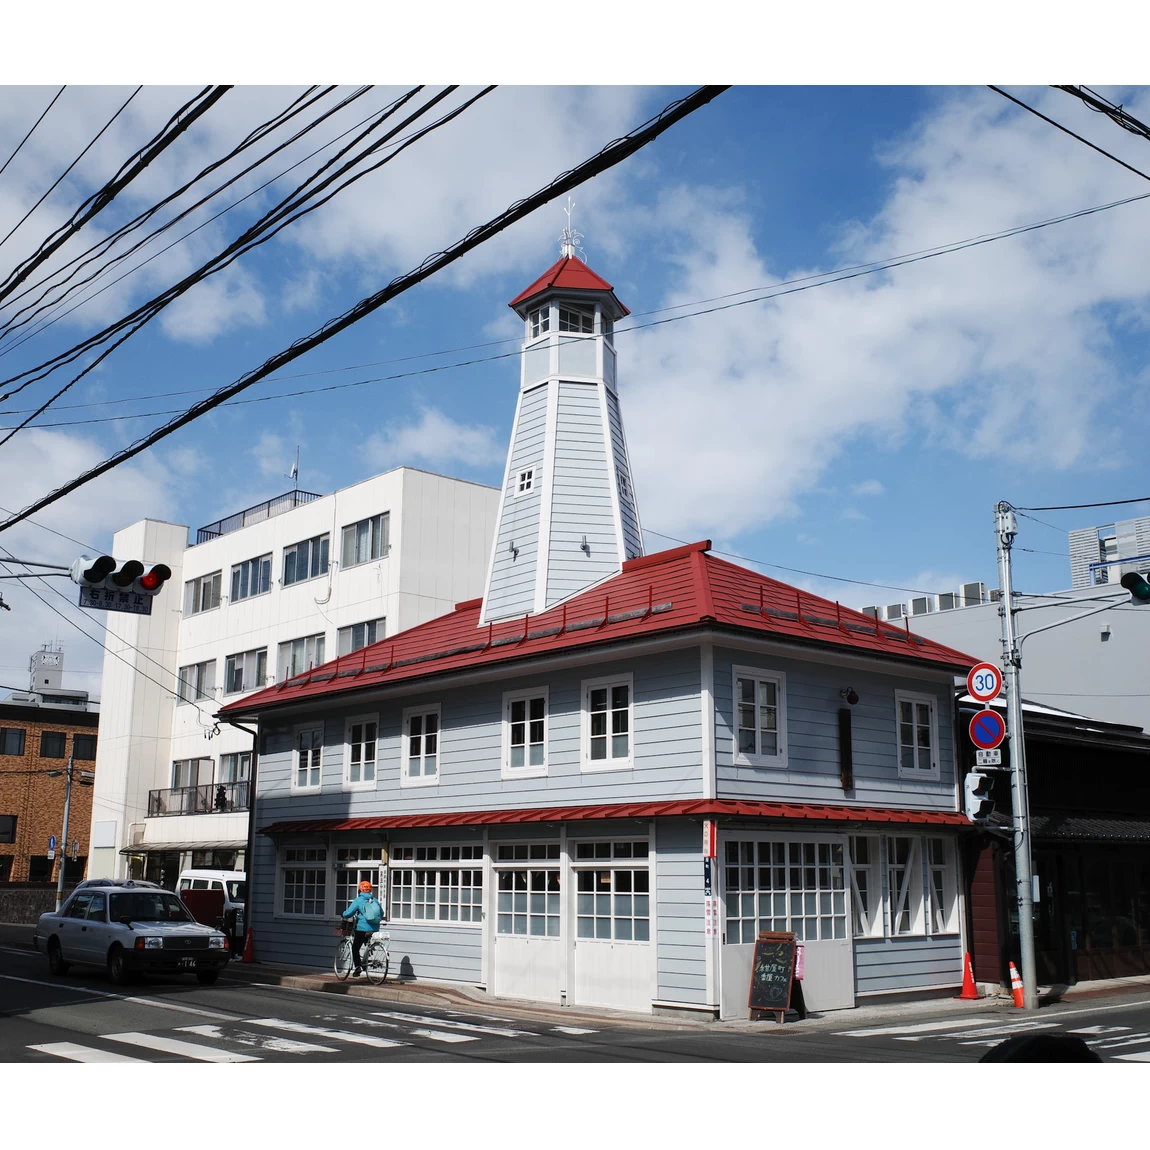 「紺屋町番屋（こんやちょうばんや）」は、赤い屋根とグレーの外壁がかわいらしい建物